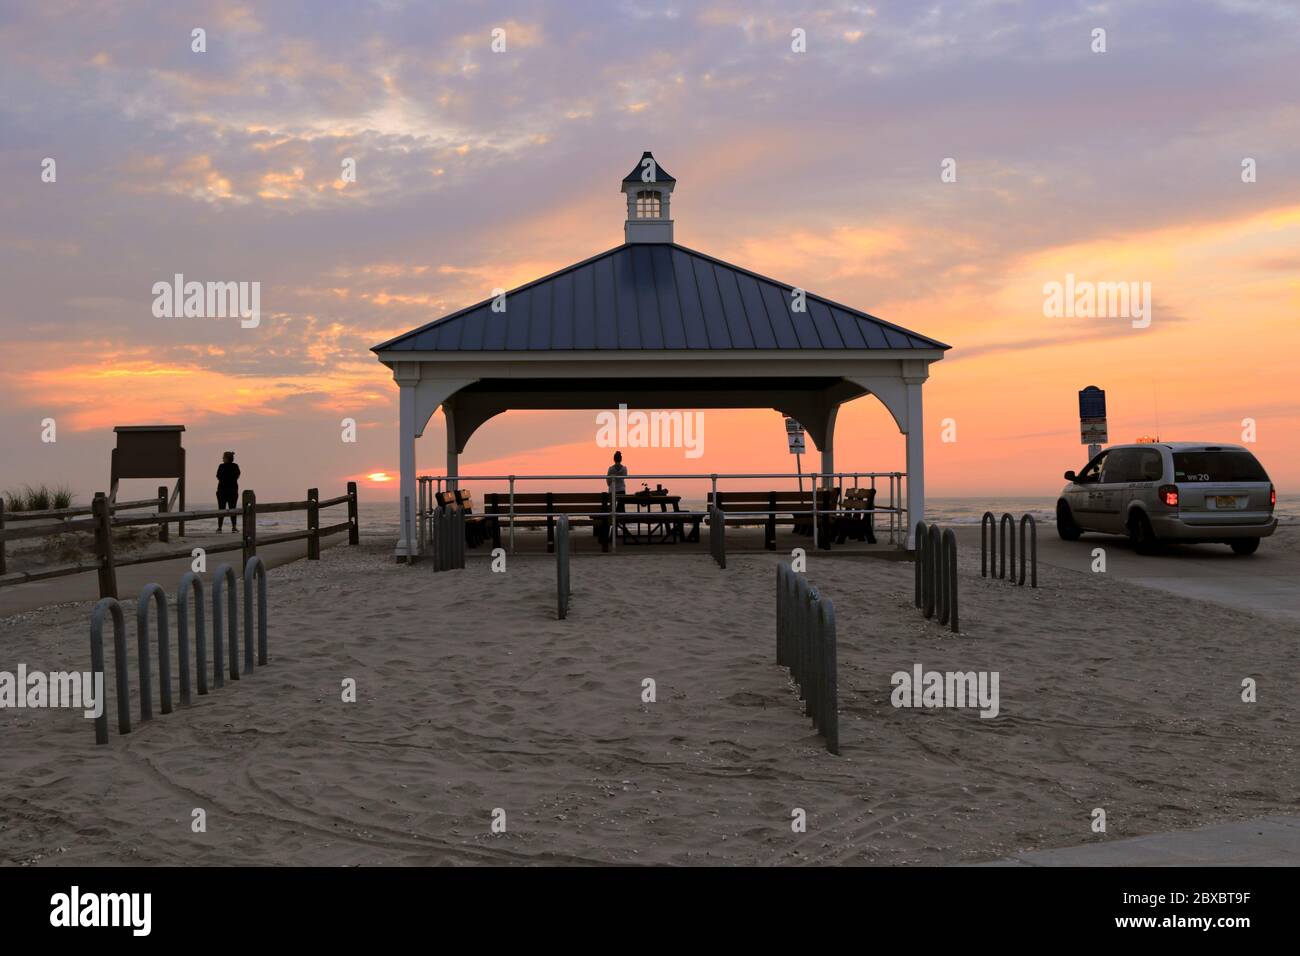 Ein Pavillon mit Blick auf Hereford Inlet bietet einen Blick auf den Sonnenaufgang. North Wildwood, New Jersey, USA Stockfoto